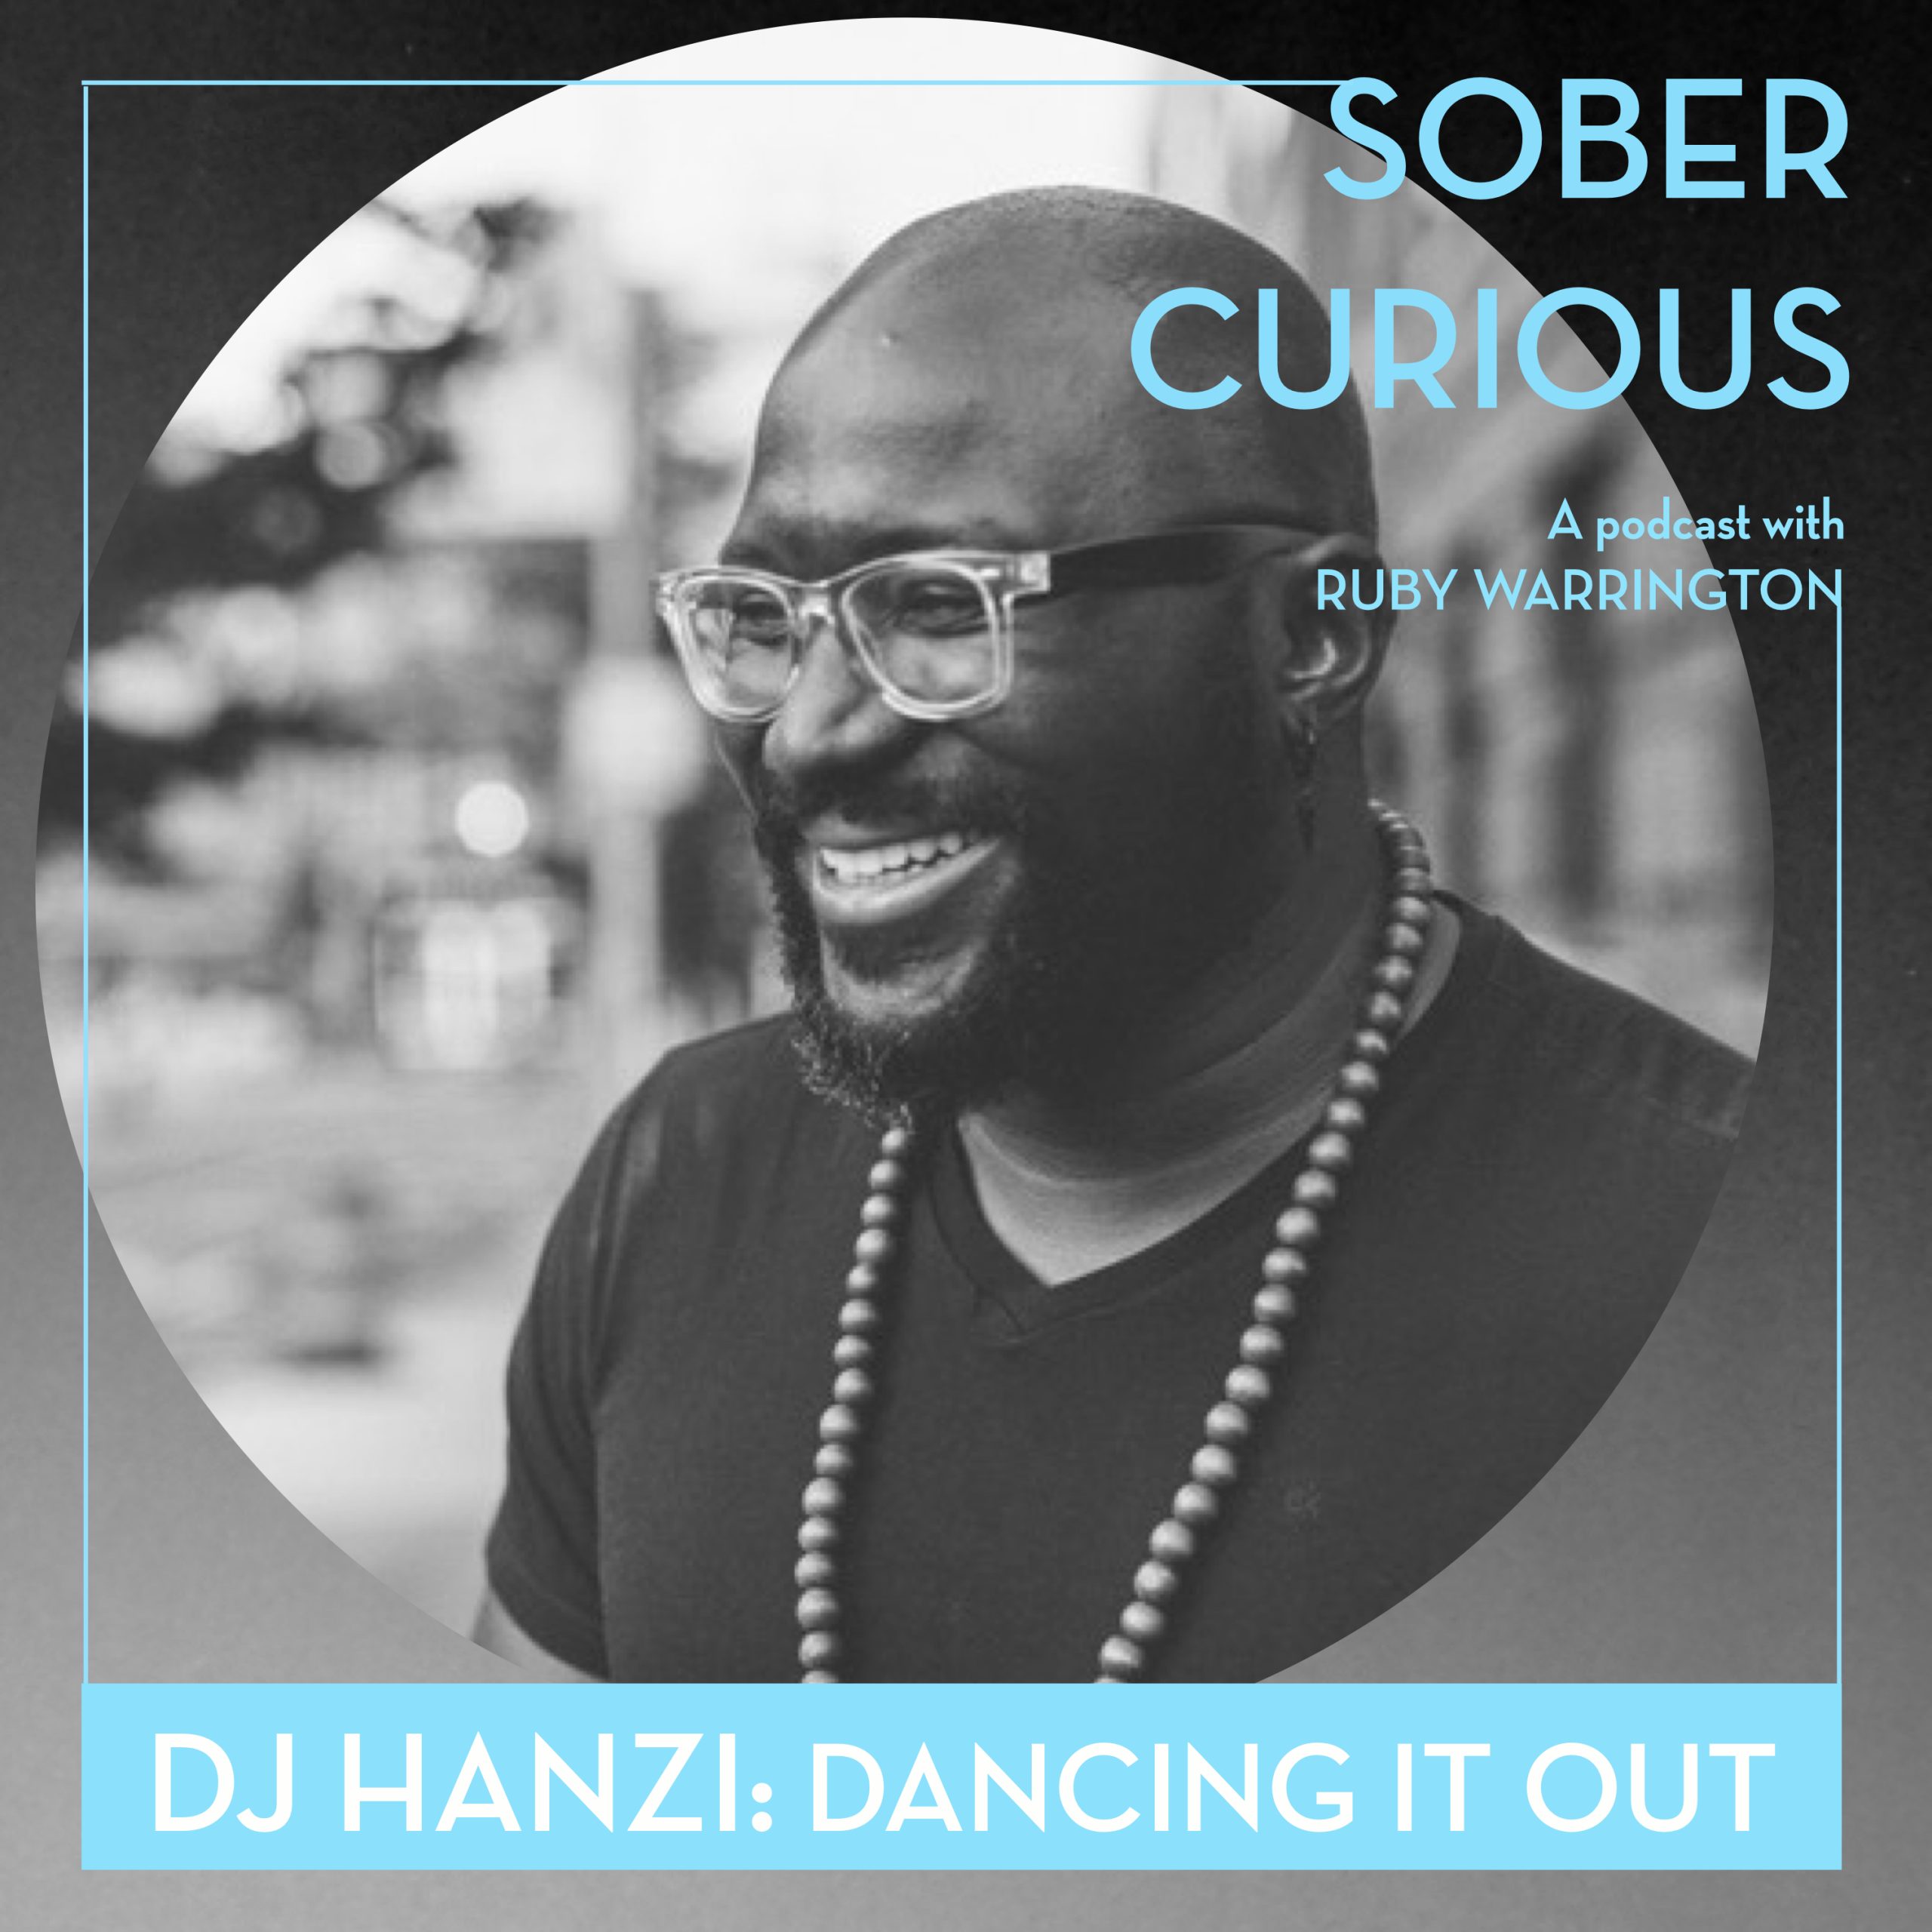 DJ Hanzi reprieve sober curious podcast